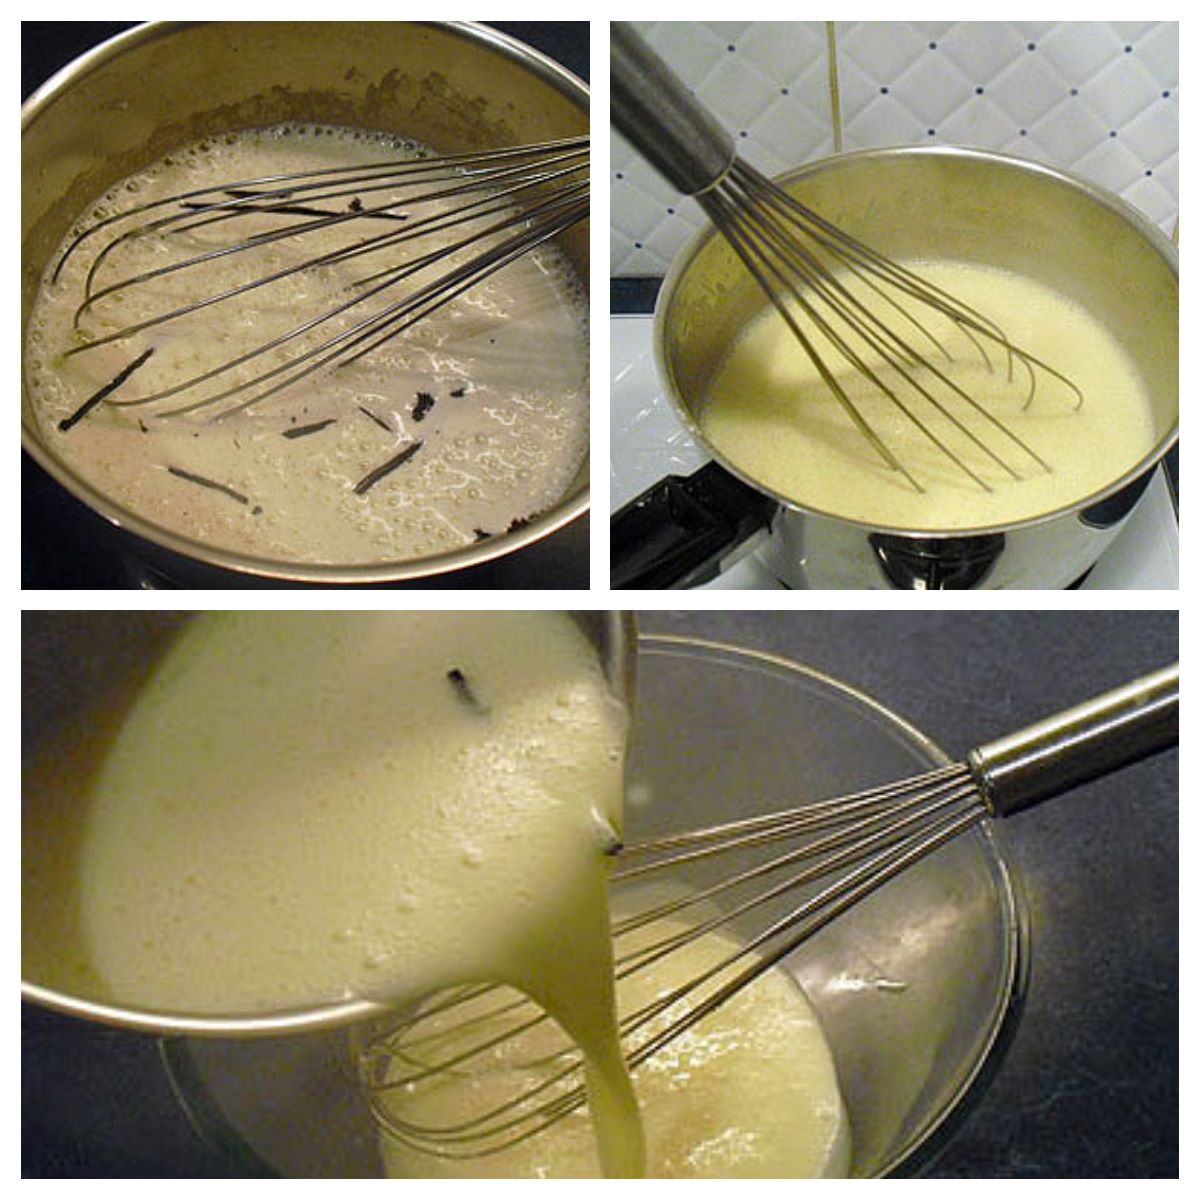 Iles flottantes vanille safran - La recette facile par Toqués 2 Cuisine